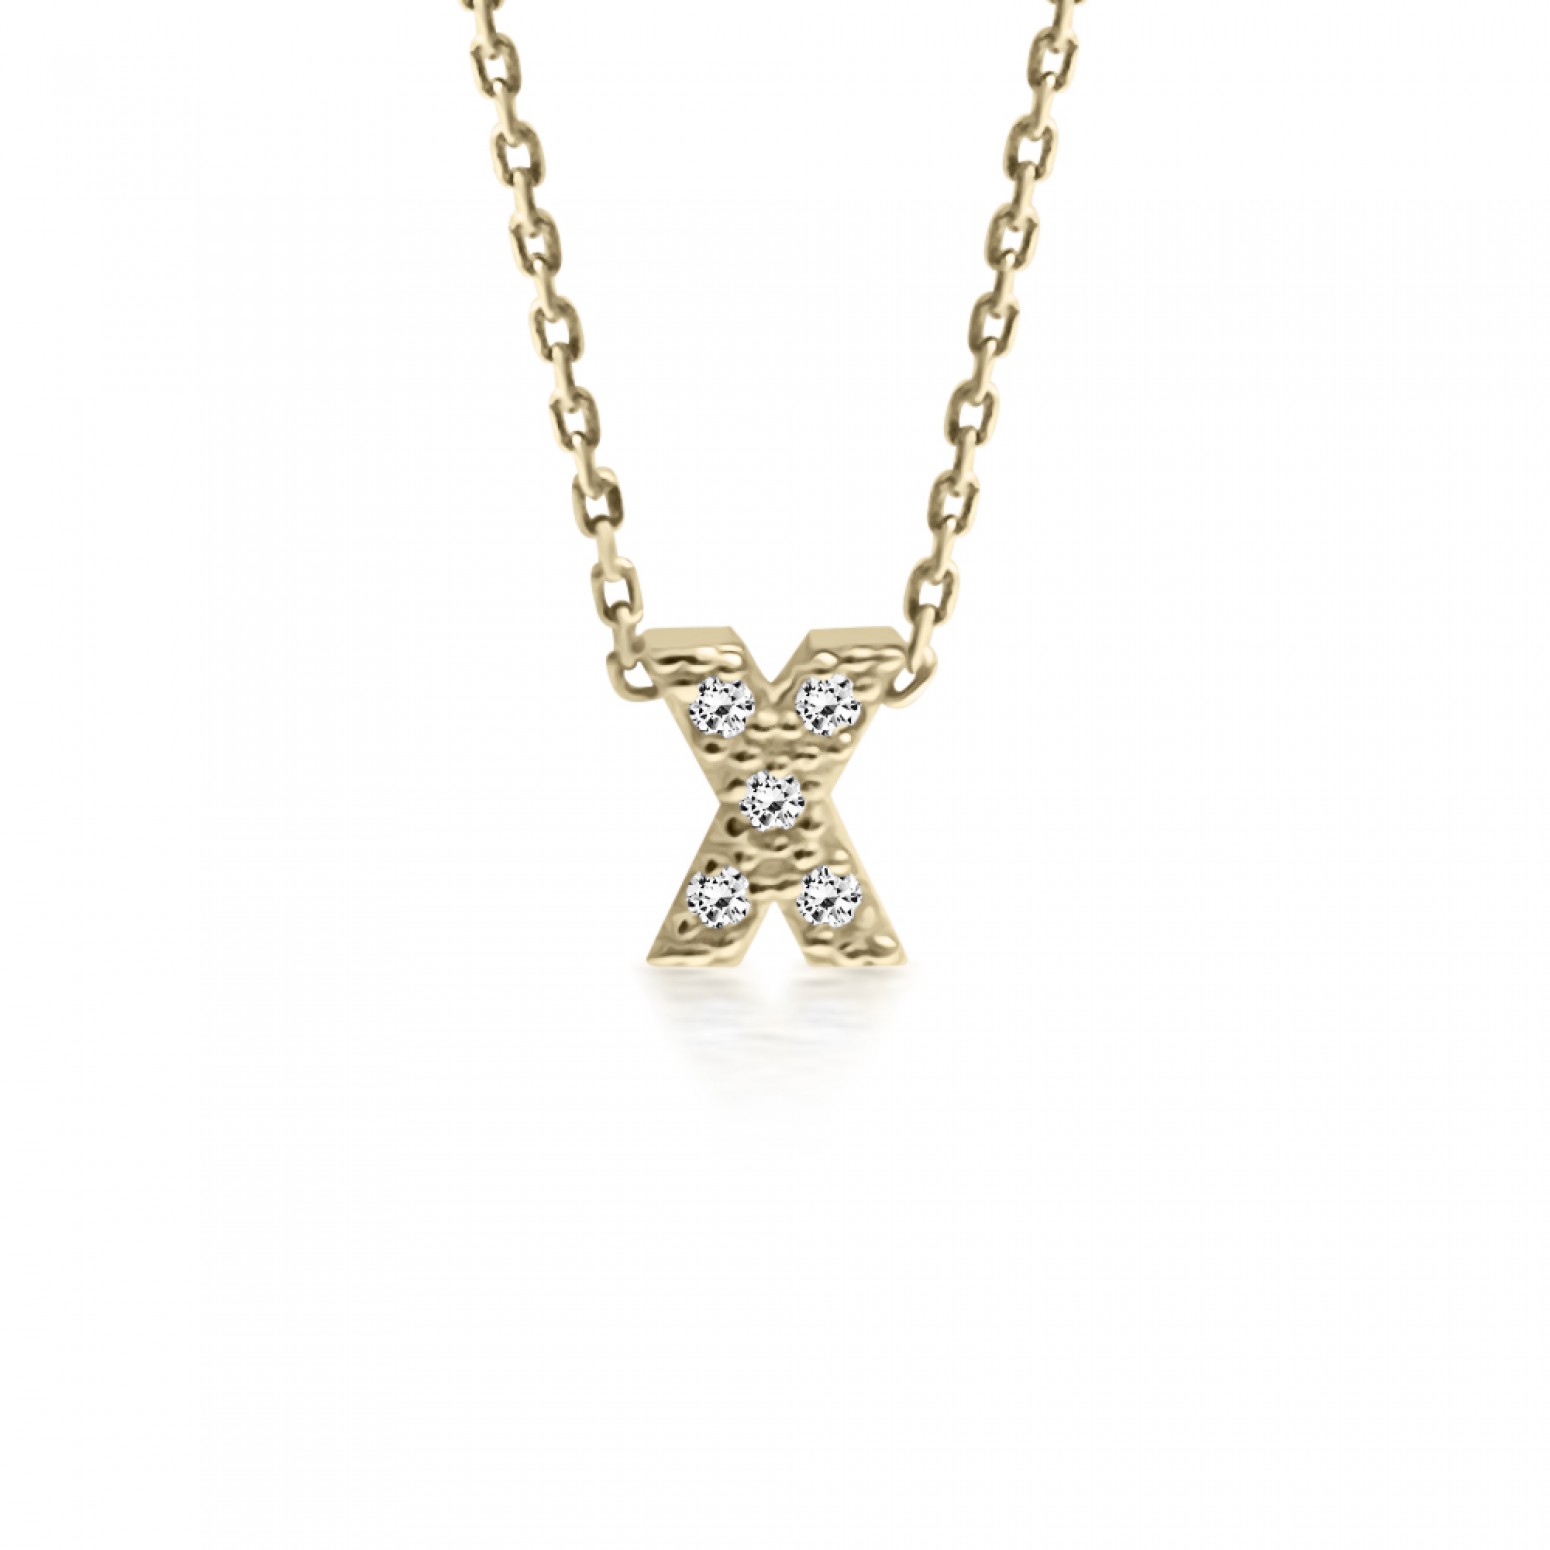 Monogram necklace Χ, Κ14 gold with zircon, ko5201 NECKLACES Κοσμηματα - chrilia.gr